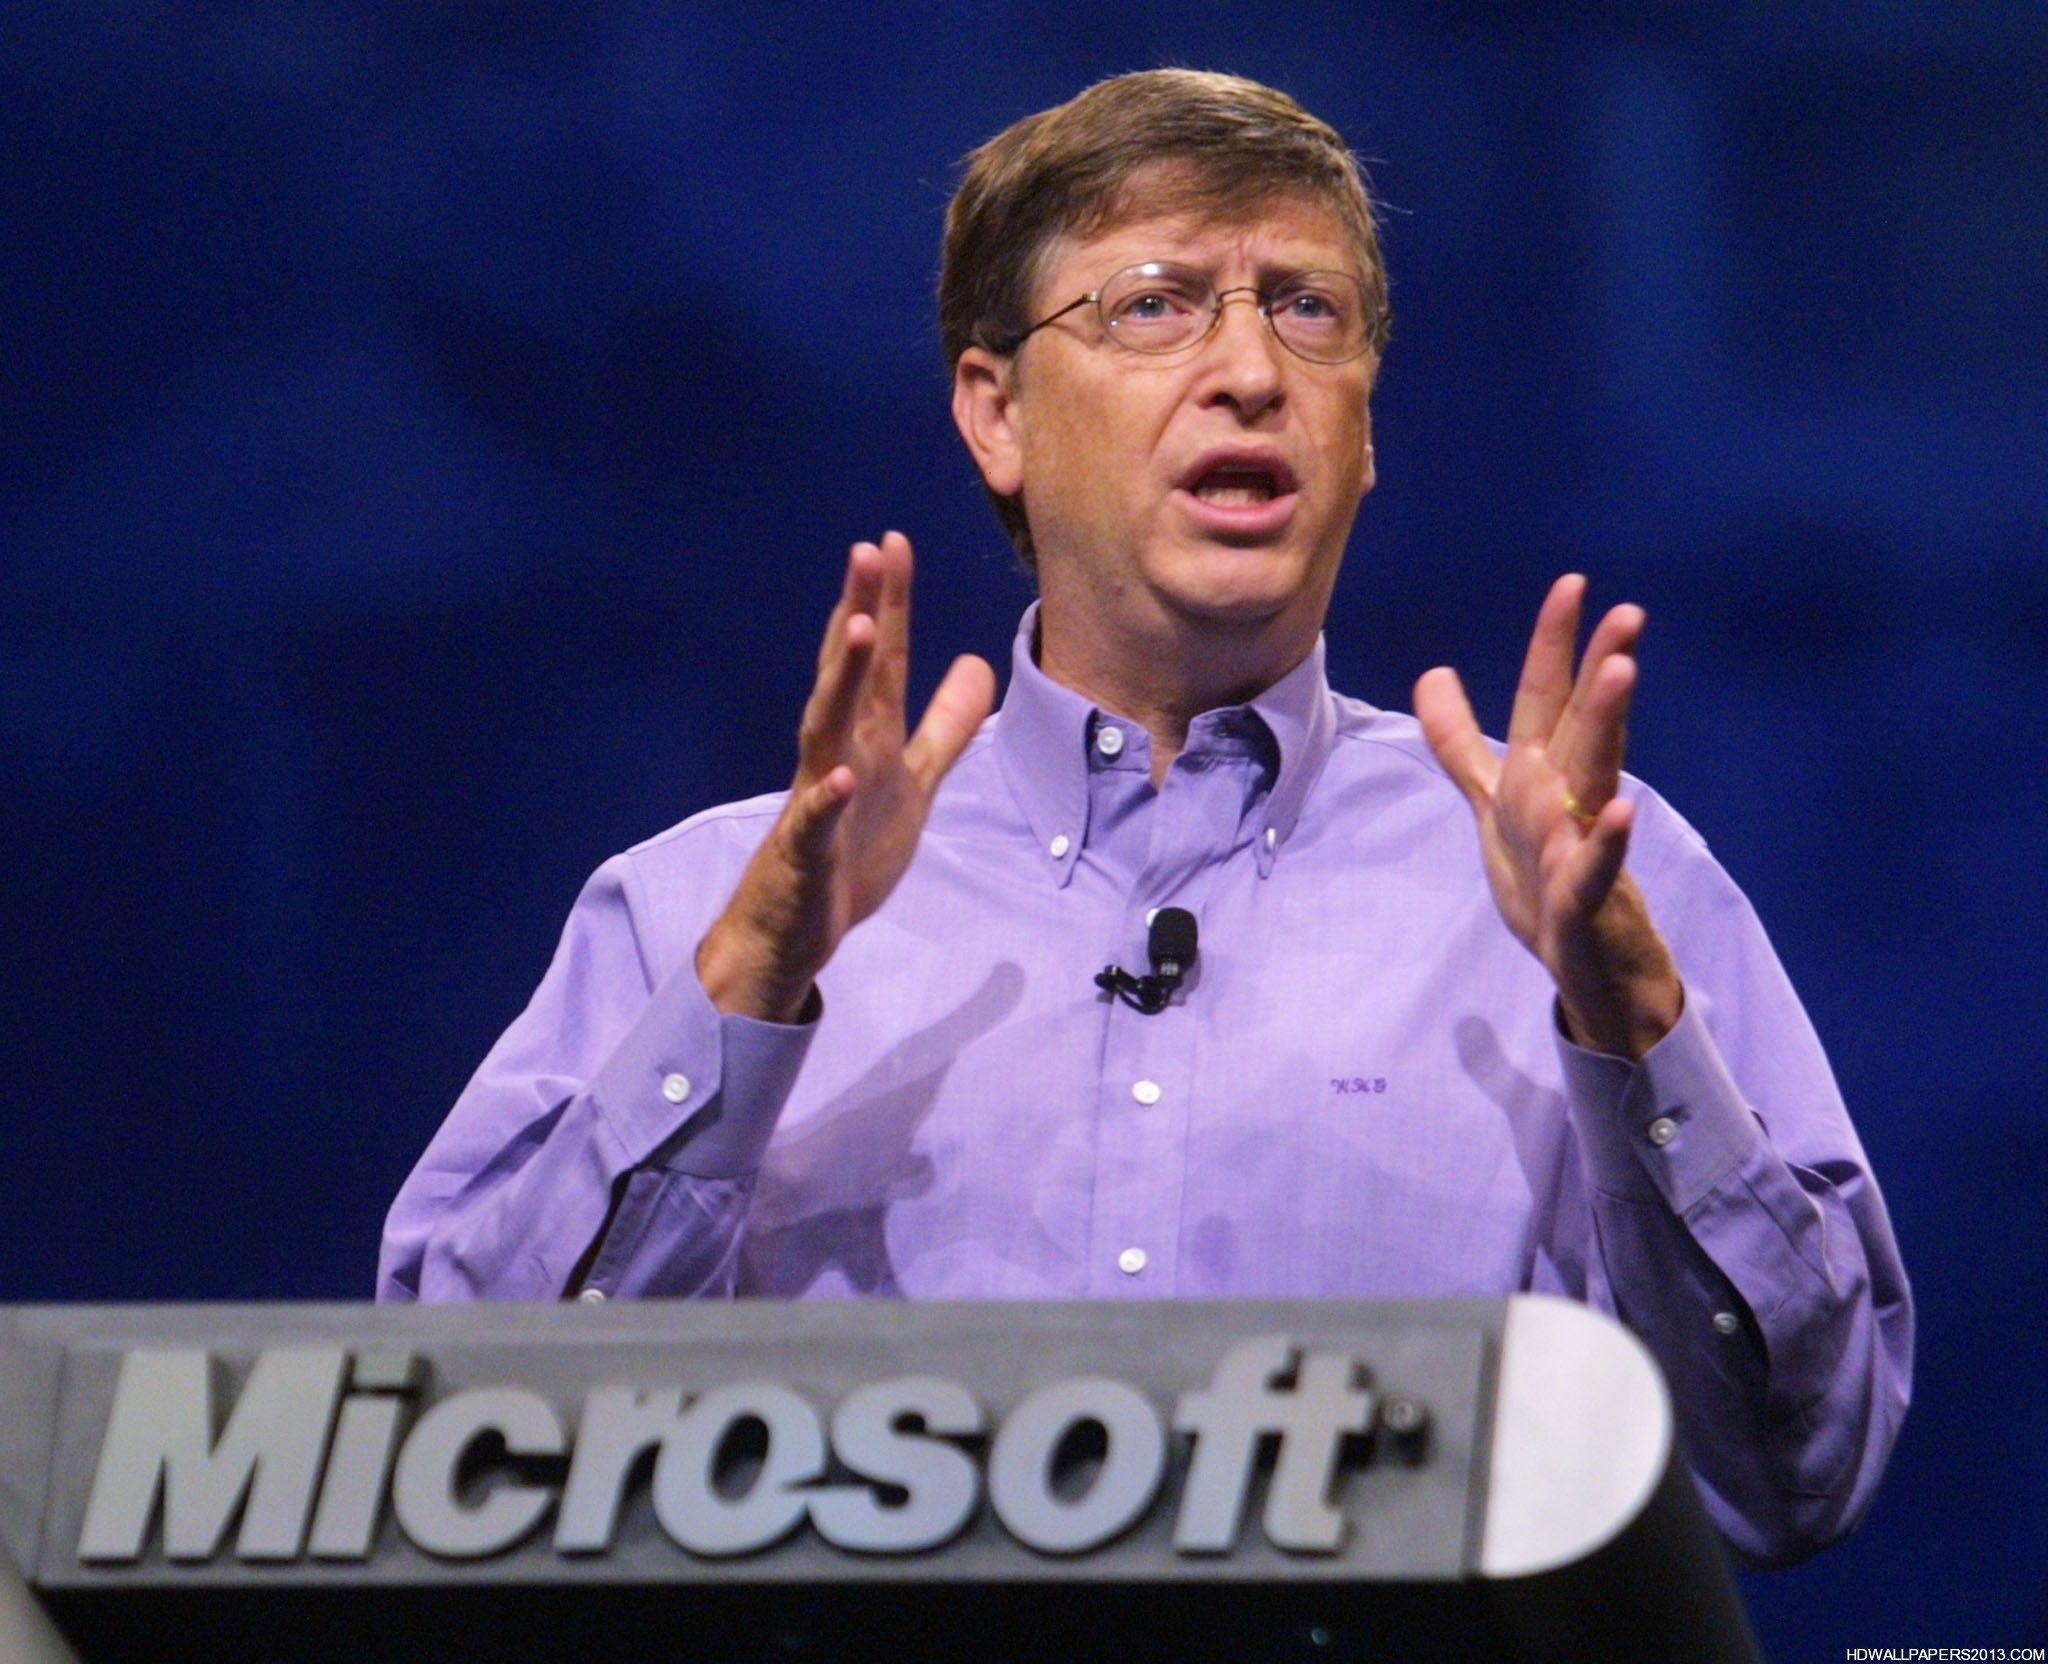 Bill Gates Wallpaper. High Definition Wallpaper, High